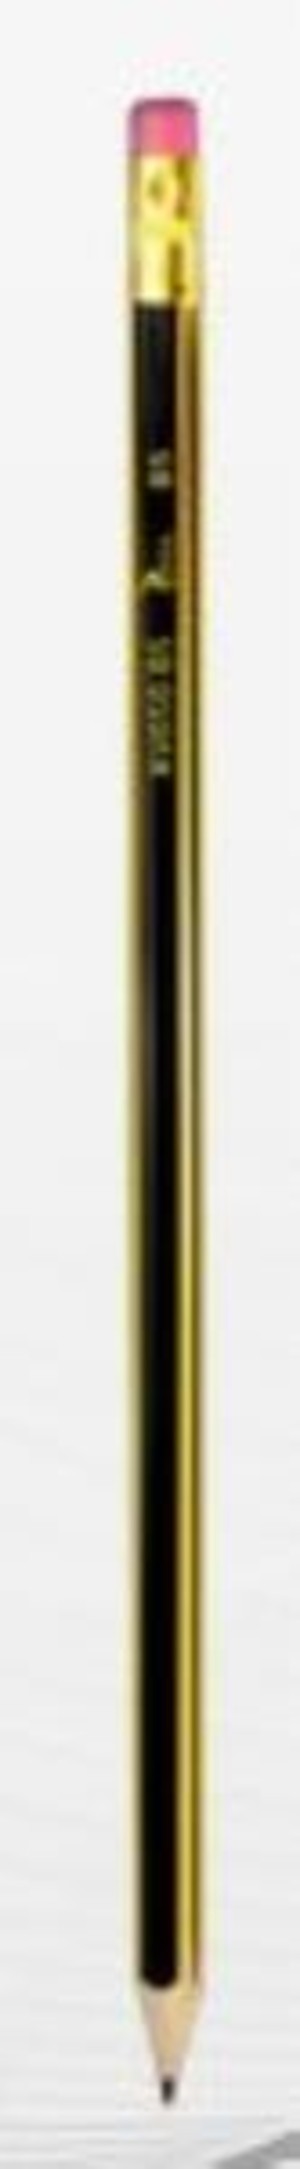 Ołówek techniczny z gumką H p12. TETIS, cena za 1szt.